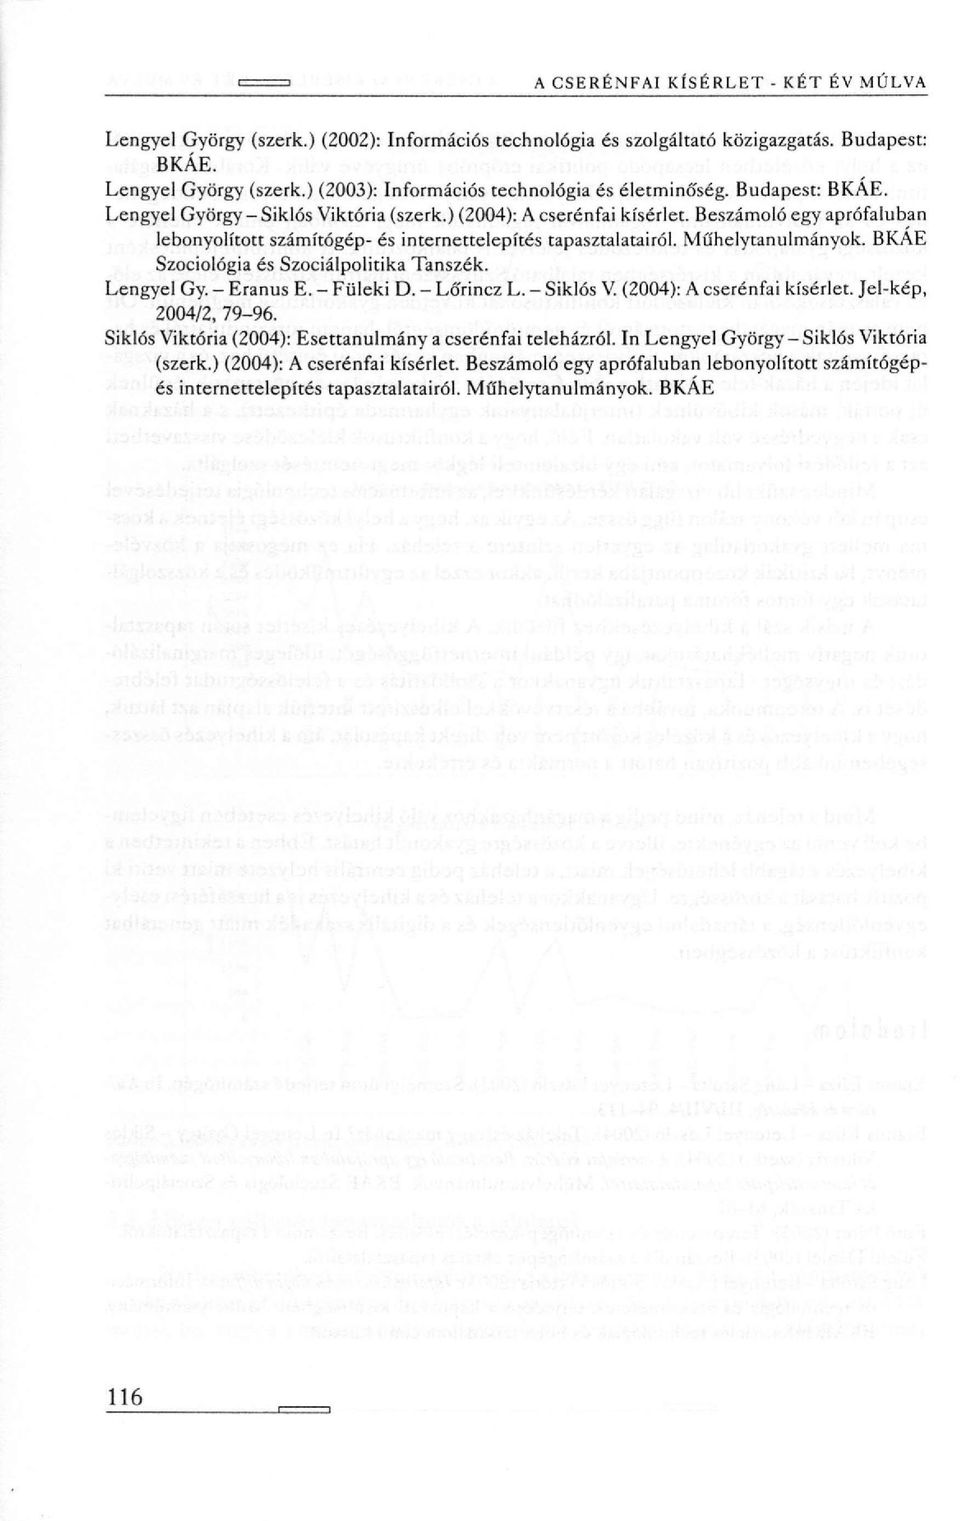 BKÁE Szociológia és Szociálpolitika Tanszék. Lengyel Gy. - Eranus E. - Füleki D. - Lőrincz L. - Siklós V. (2004): A cserénfai kísérlet. Jel-kép, 2004/2, 79-96.